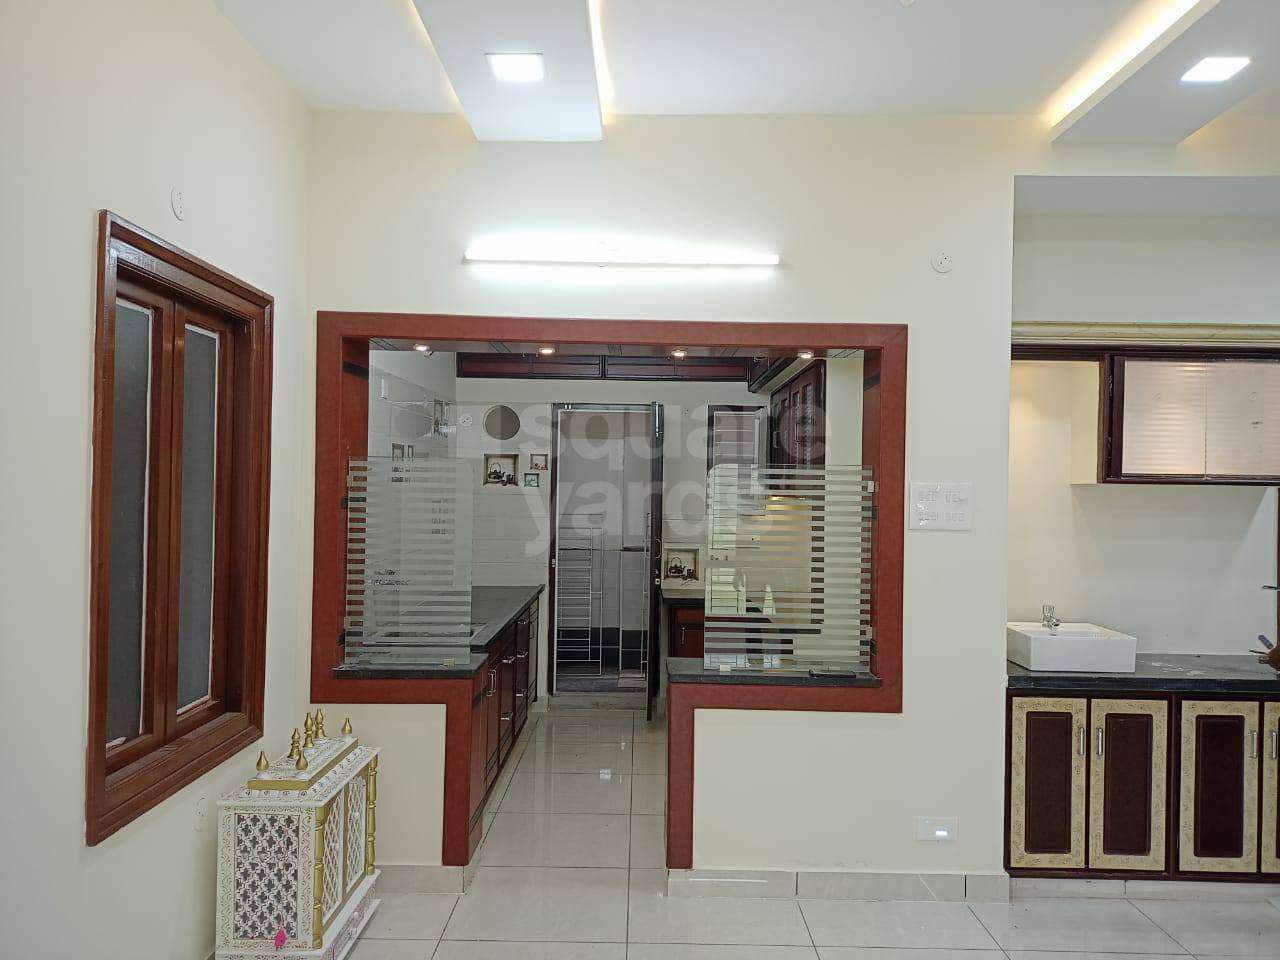 Flats in Guntur - Apartments in Guntur for Sale | GharOffice.com